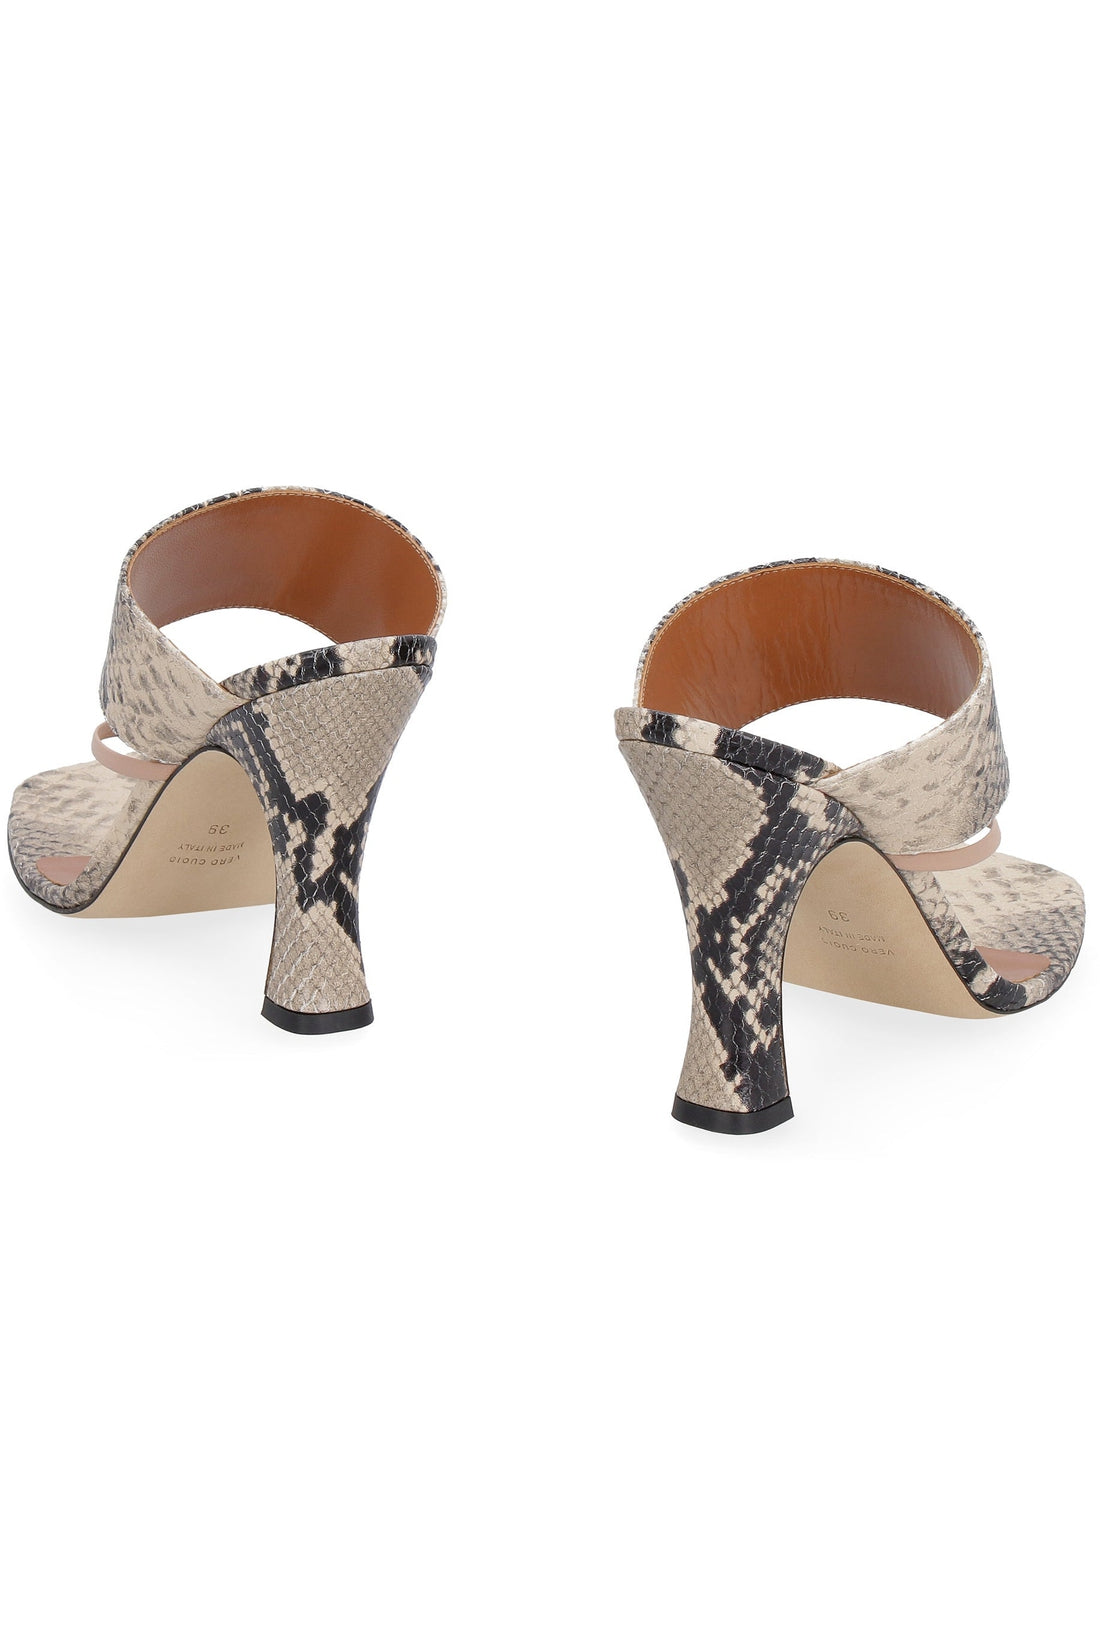 Paris Texas-OUTLET-SALE-Leather thong-sandals-ARCHIVIST